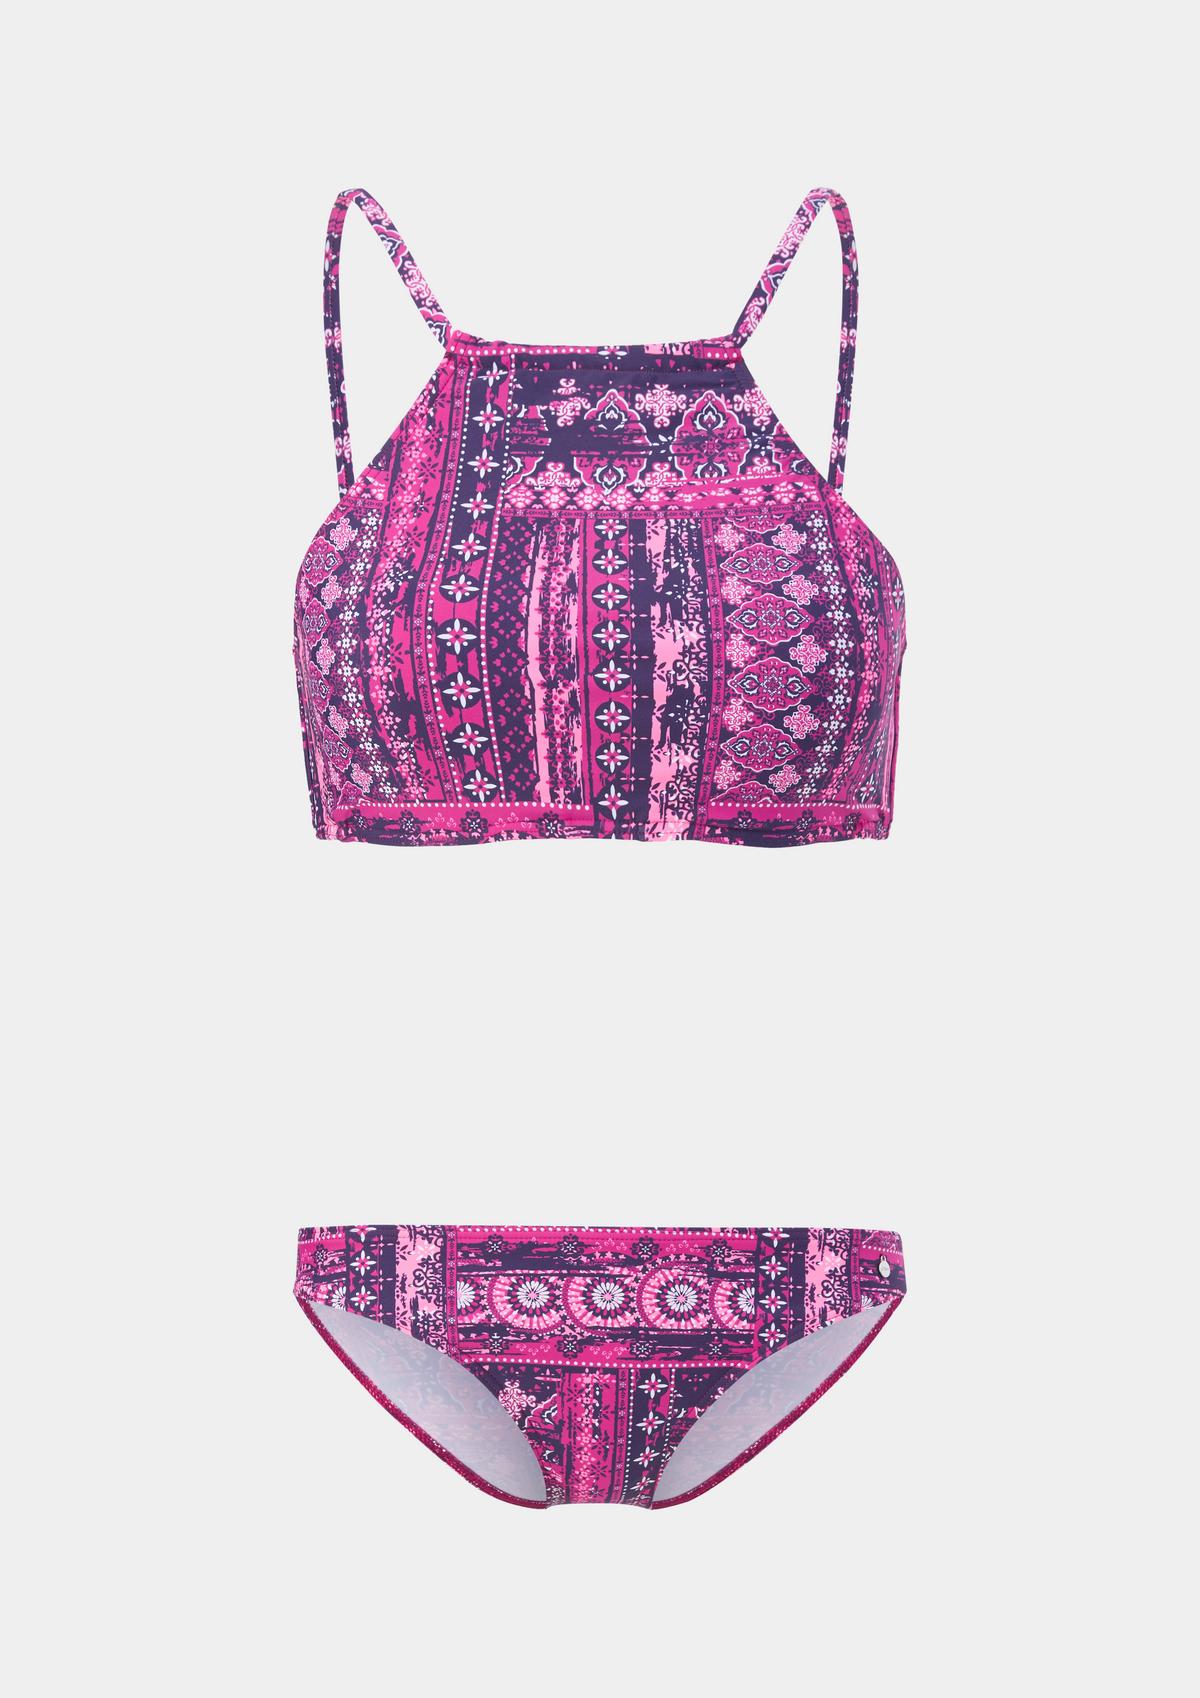 Sie können zum niedrigsten Preis kaufen! Bustier-Bikini im Set mit All-over-Muster pink 